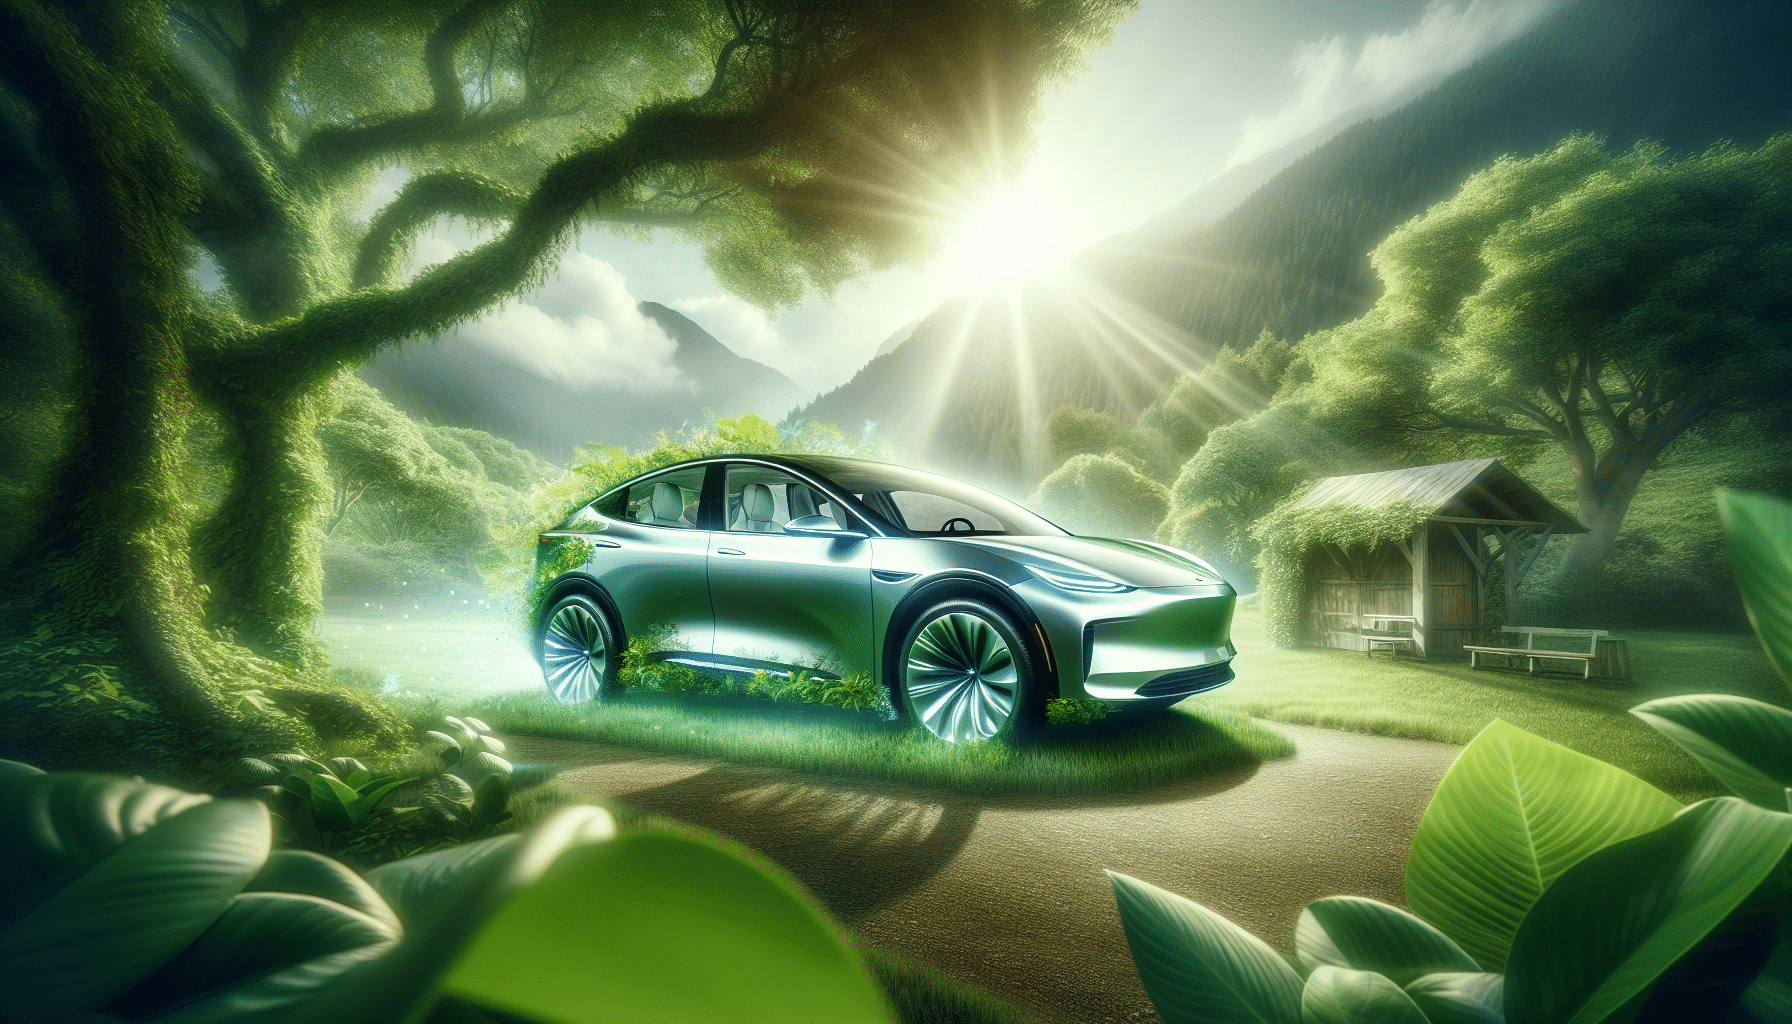 découvrez comment concilier puissance et économie pour les voitures éco en carburant. trouvez l'équilibre parfait pour une conduite efficace et respectueuse de l'environnement.